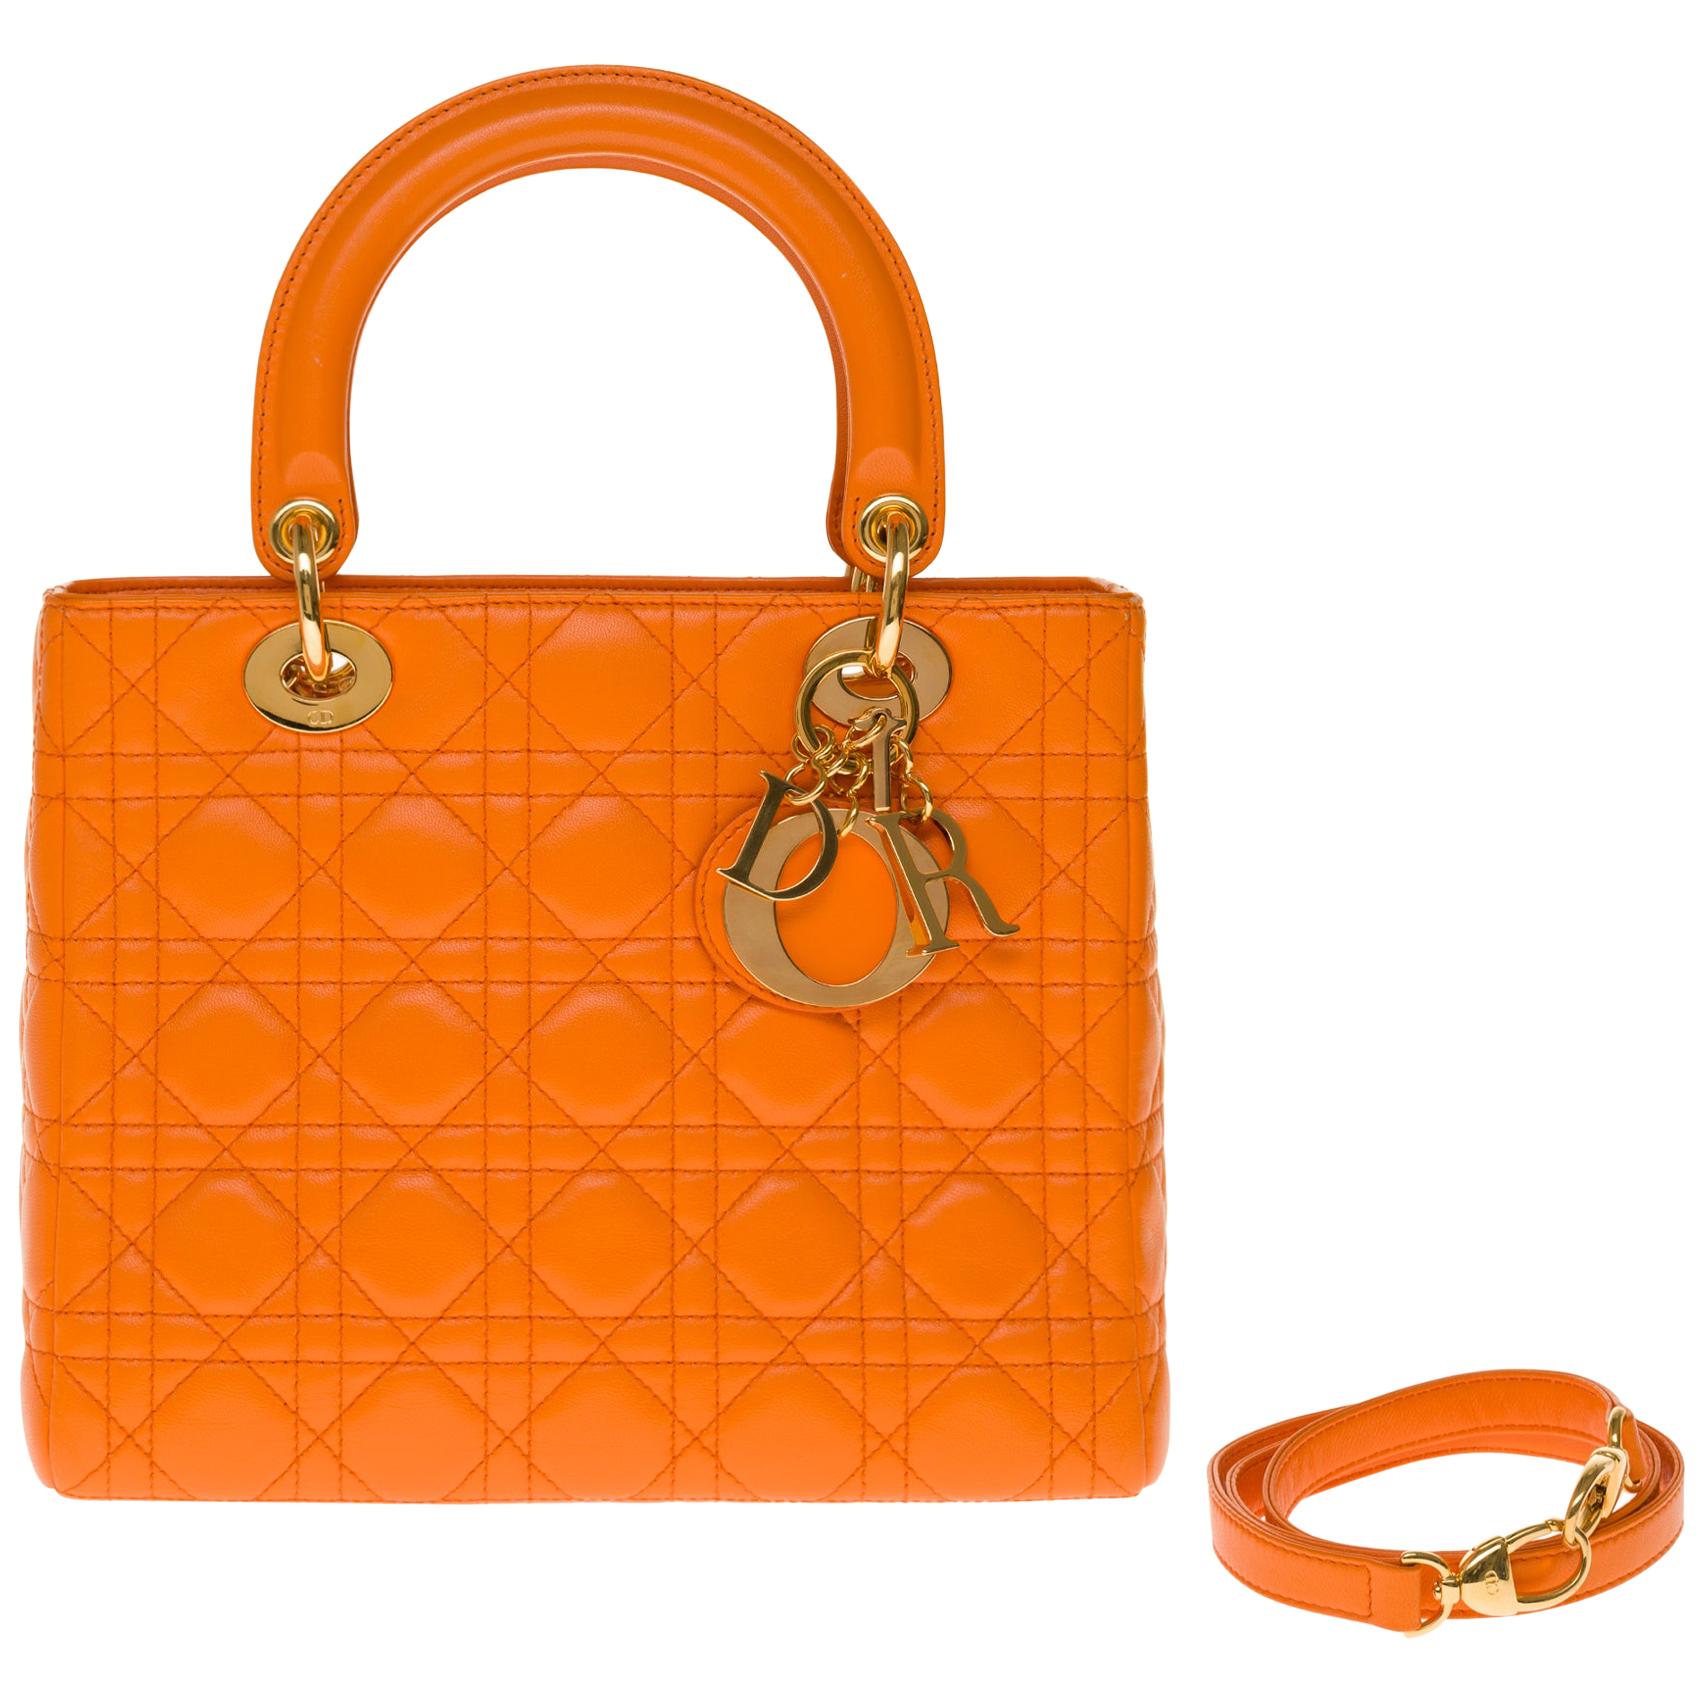  Christian Dior Lady Dior Medium size handbag in Pumpkin cannage leather, GHW